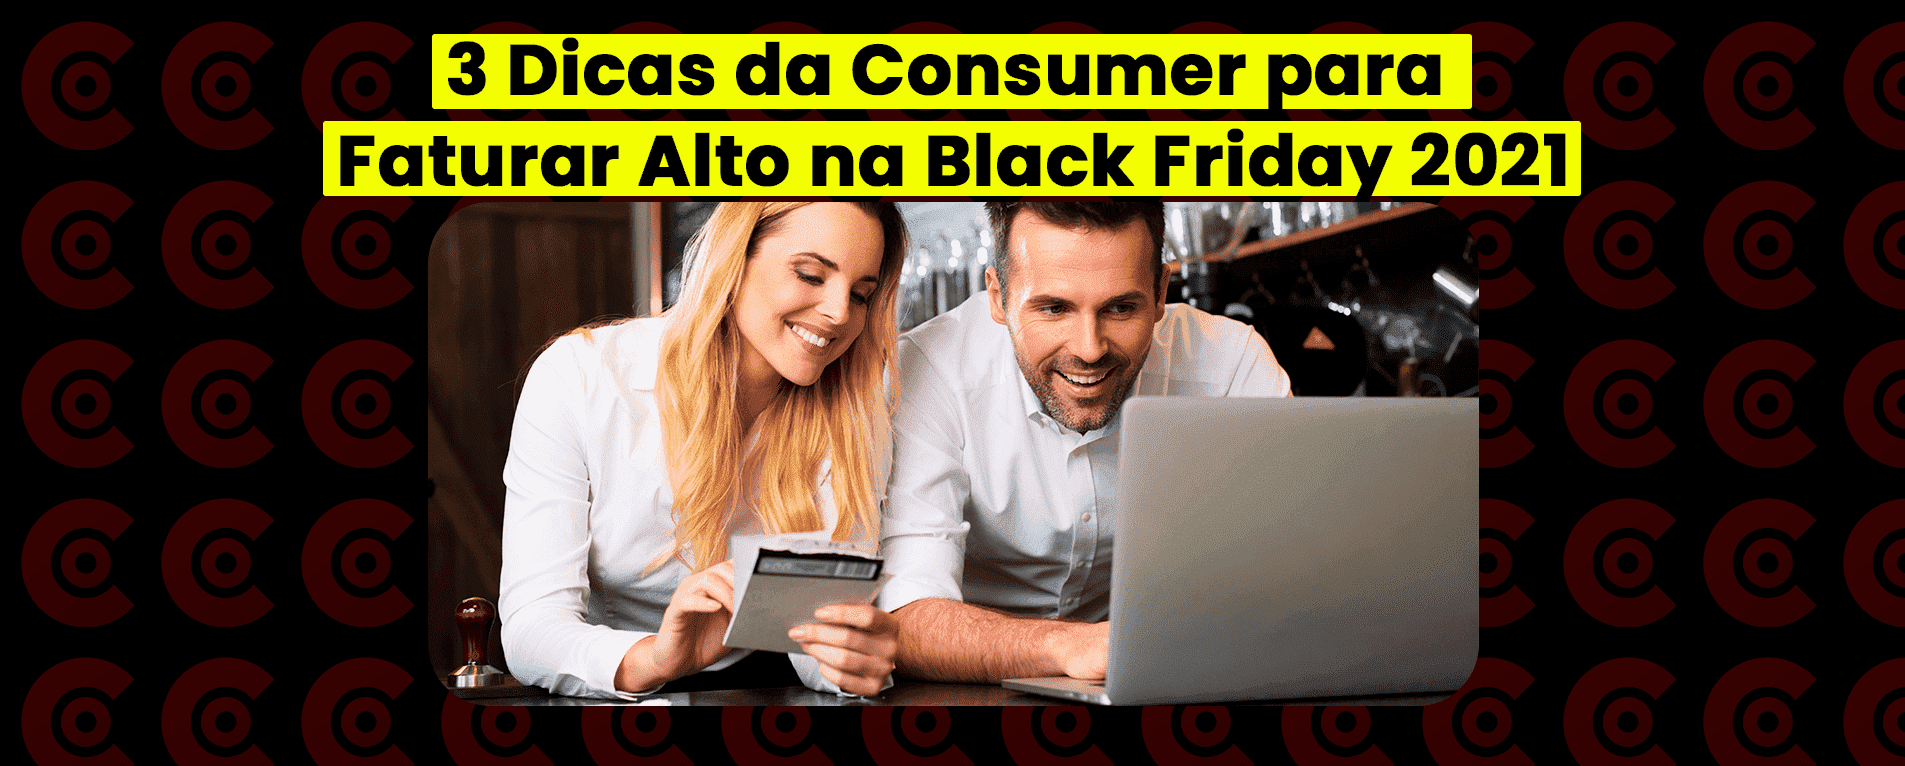 3 Dicas da Consumer para Faturar Alto na Black Friday 2021